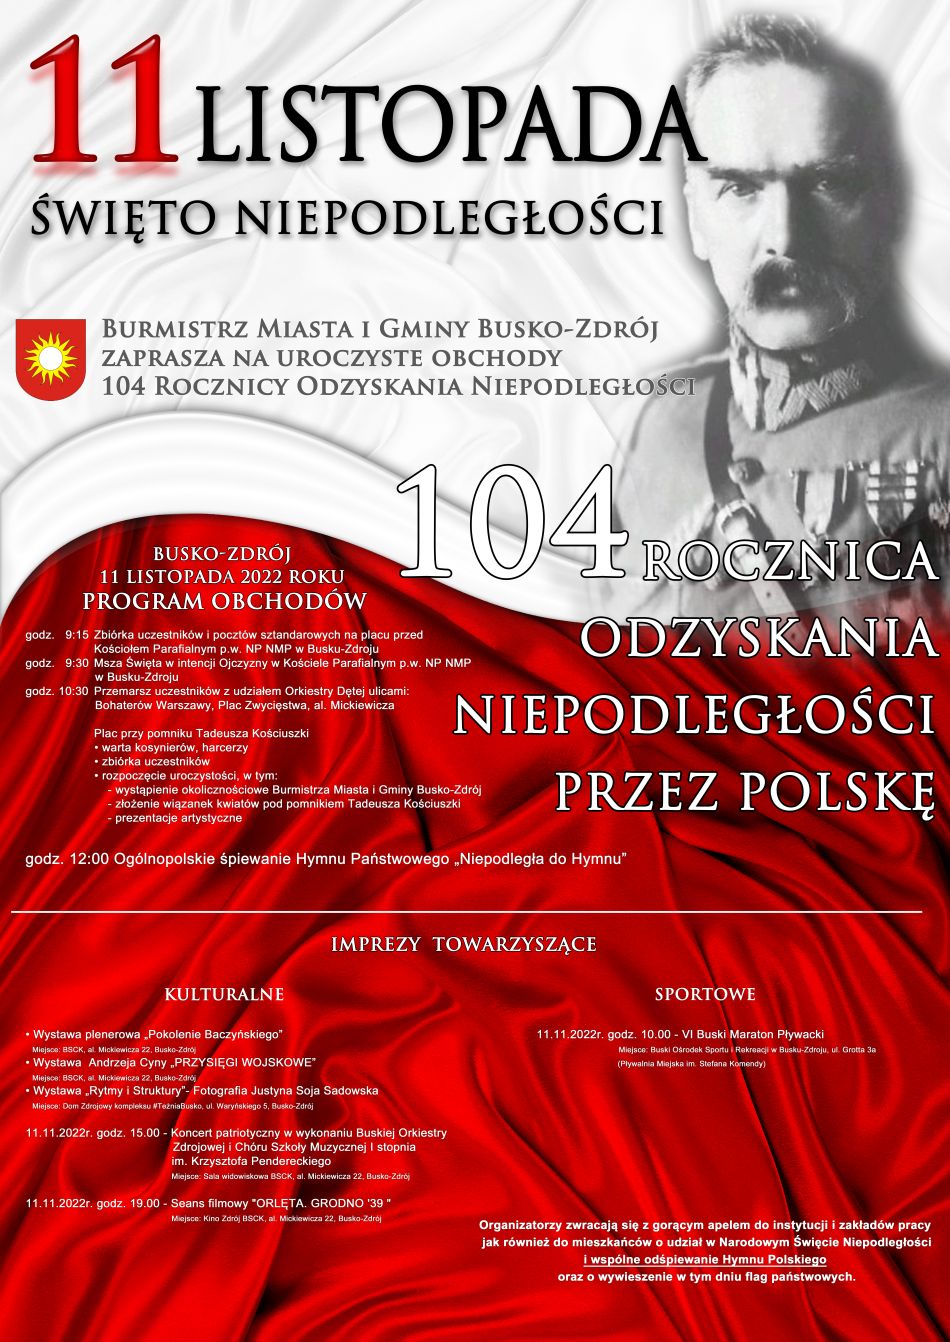 plakat promujący obchody Święta Niepodległości 11 listopada w Busku-Zdroju